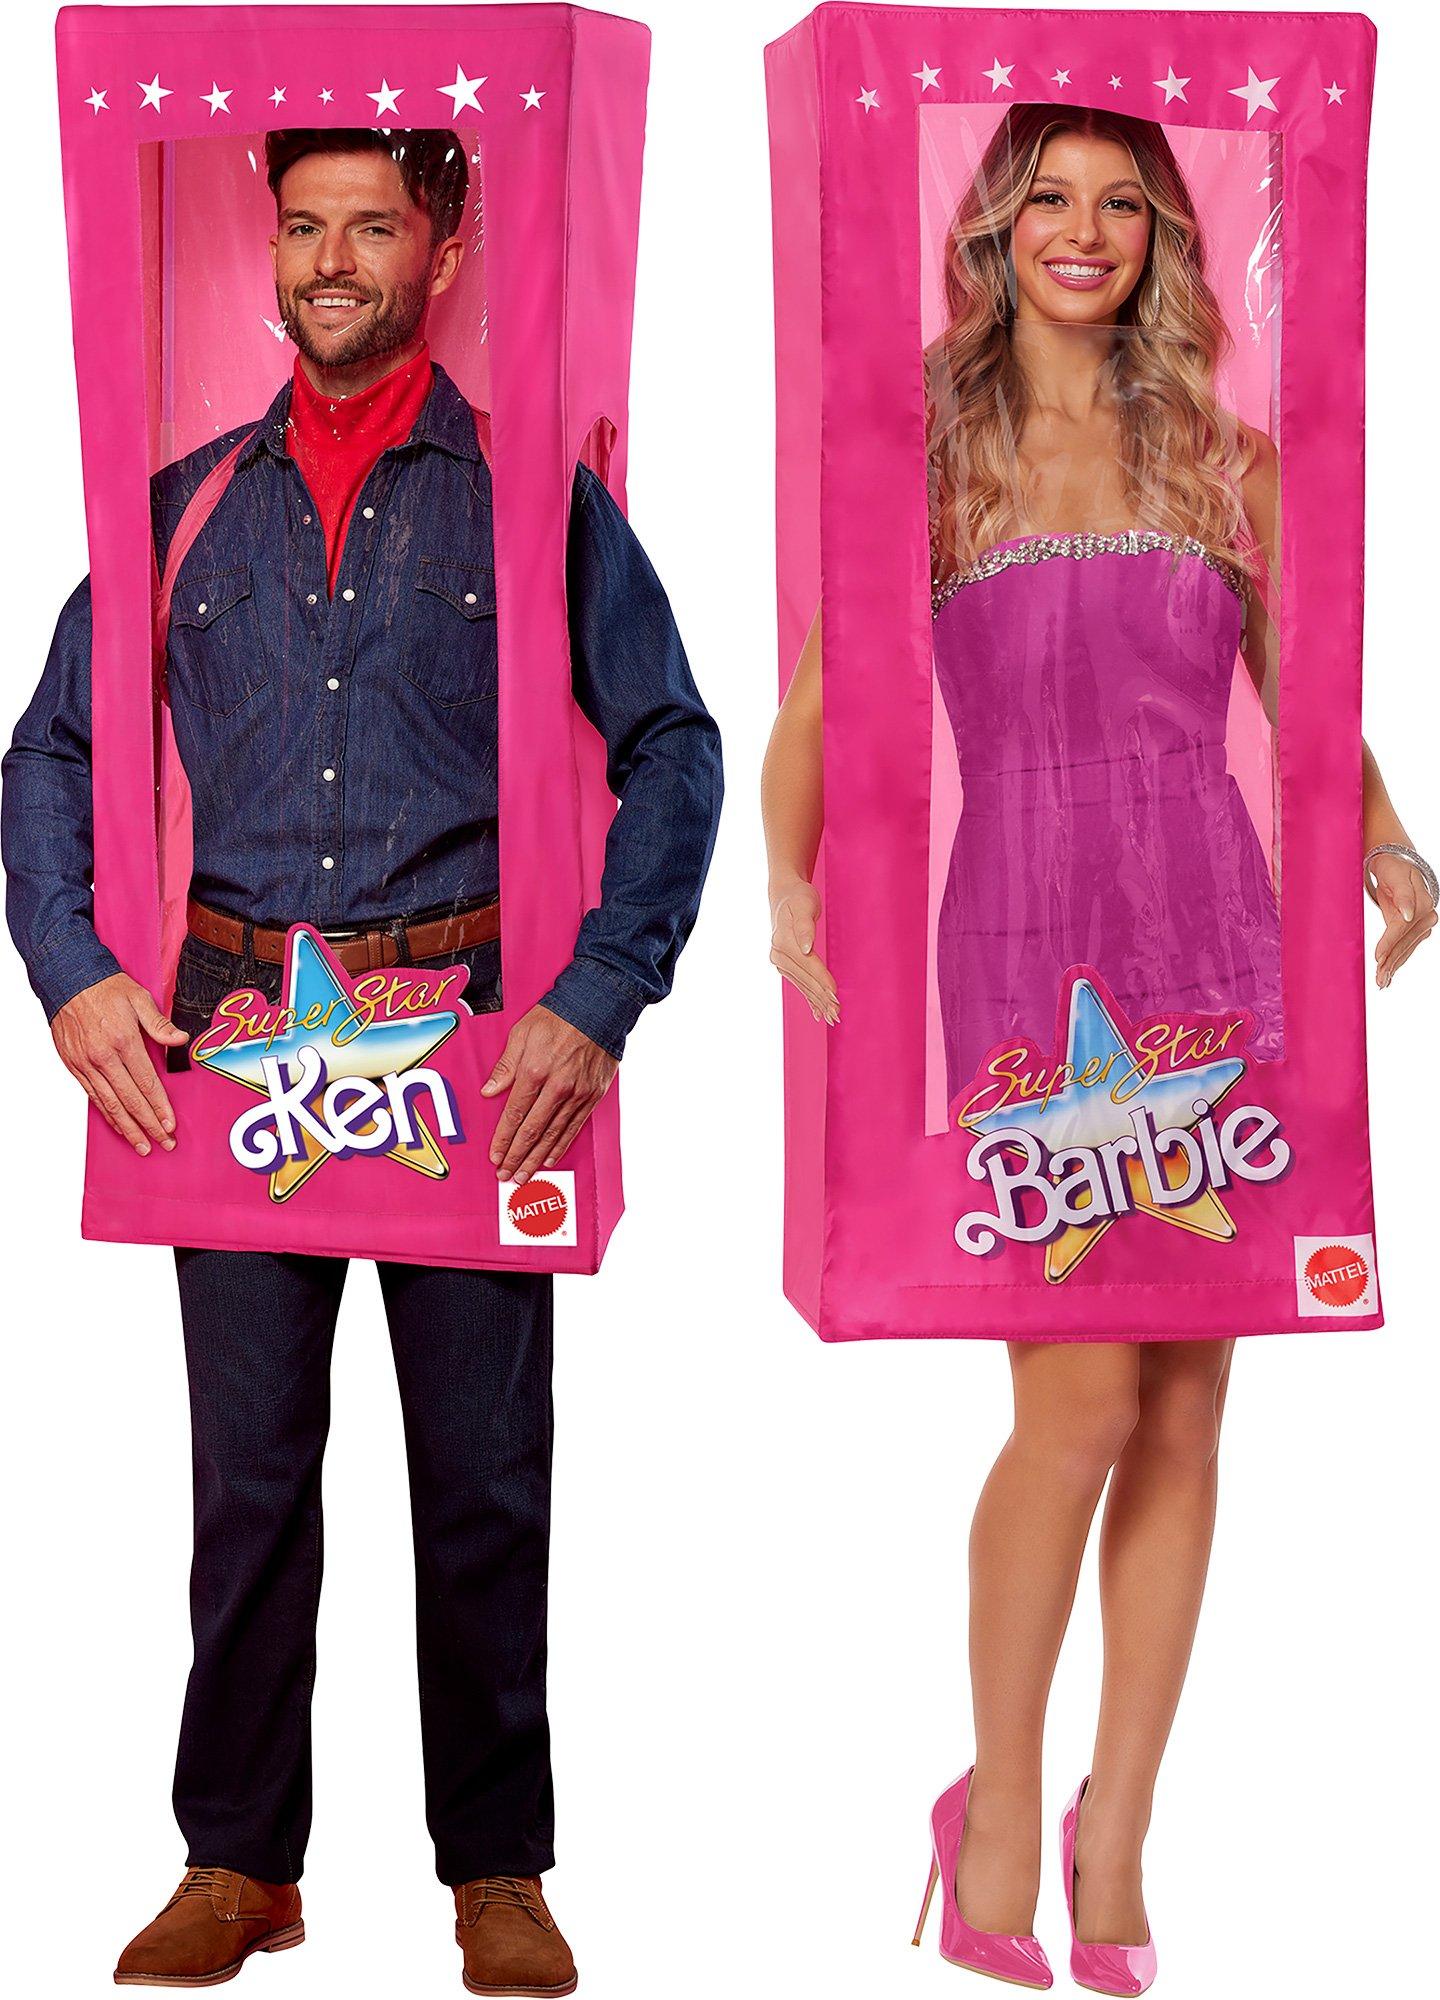 Barbie & Ken Boxes Couple Costume | Party City